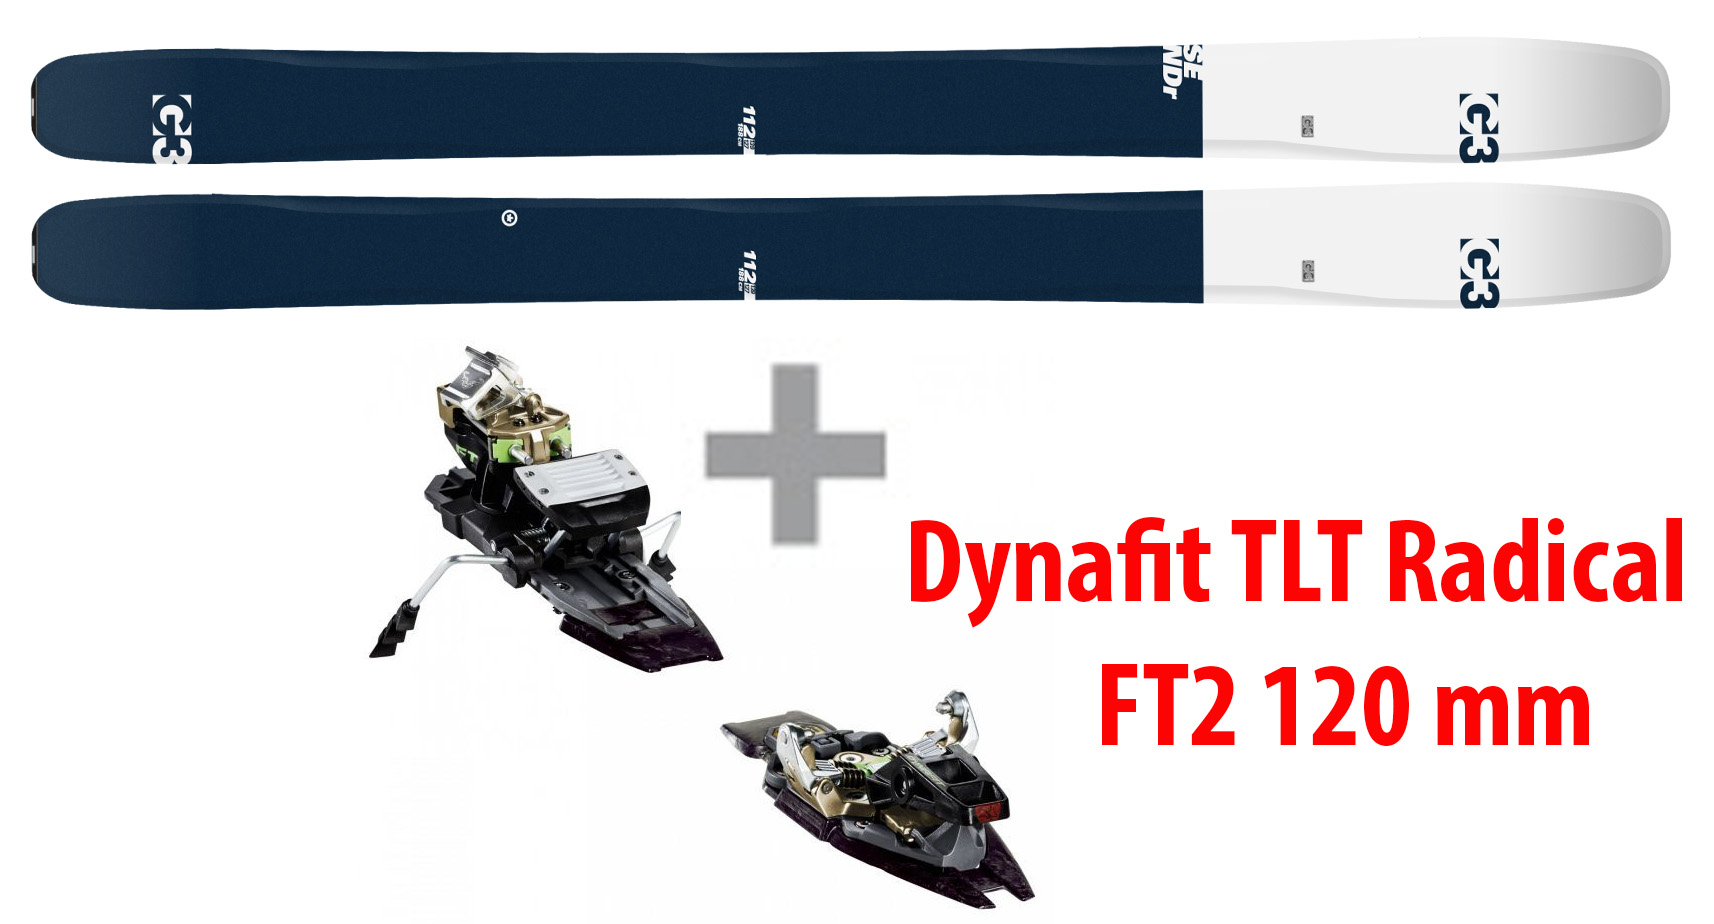 G3 SENDr 112 + Dynafit Radical FT2 120mm